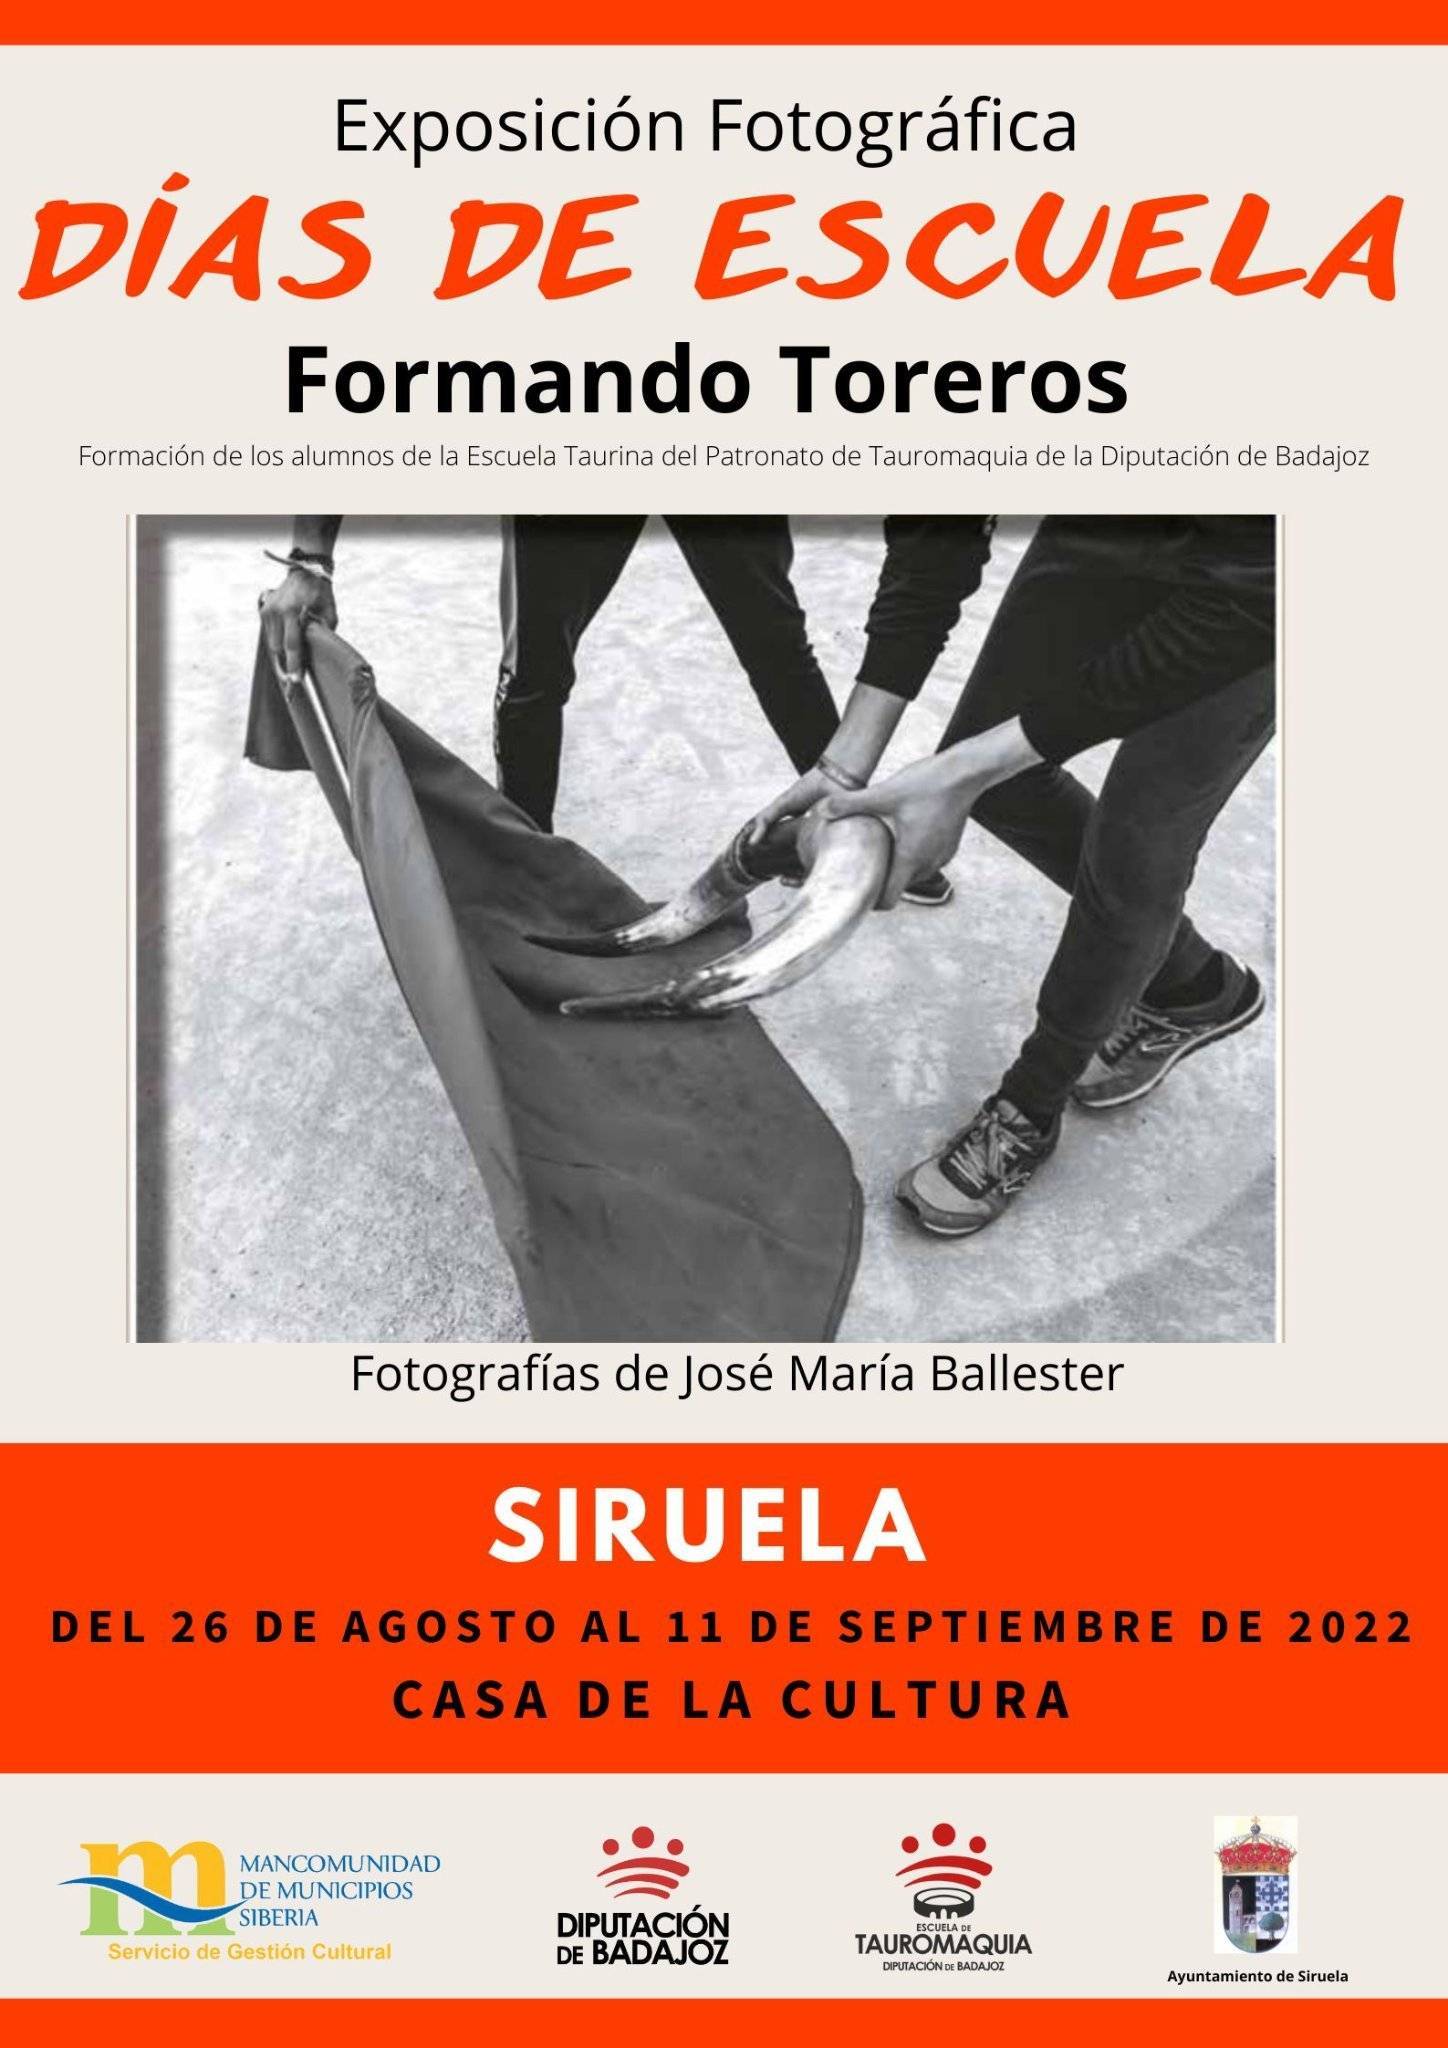 Exposición fotográfica 'Días de escuela. Formando toreros' (2022) - Siruela (Badajoz)